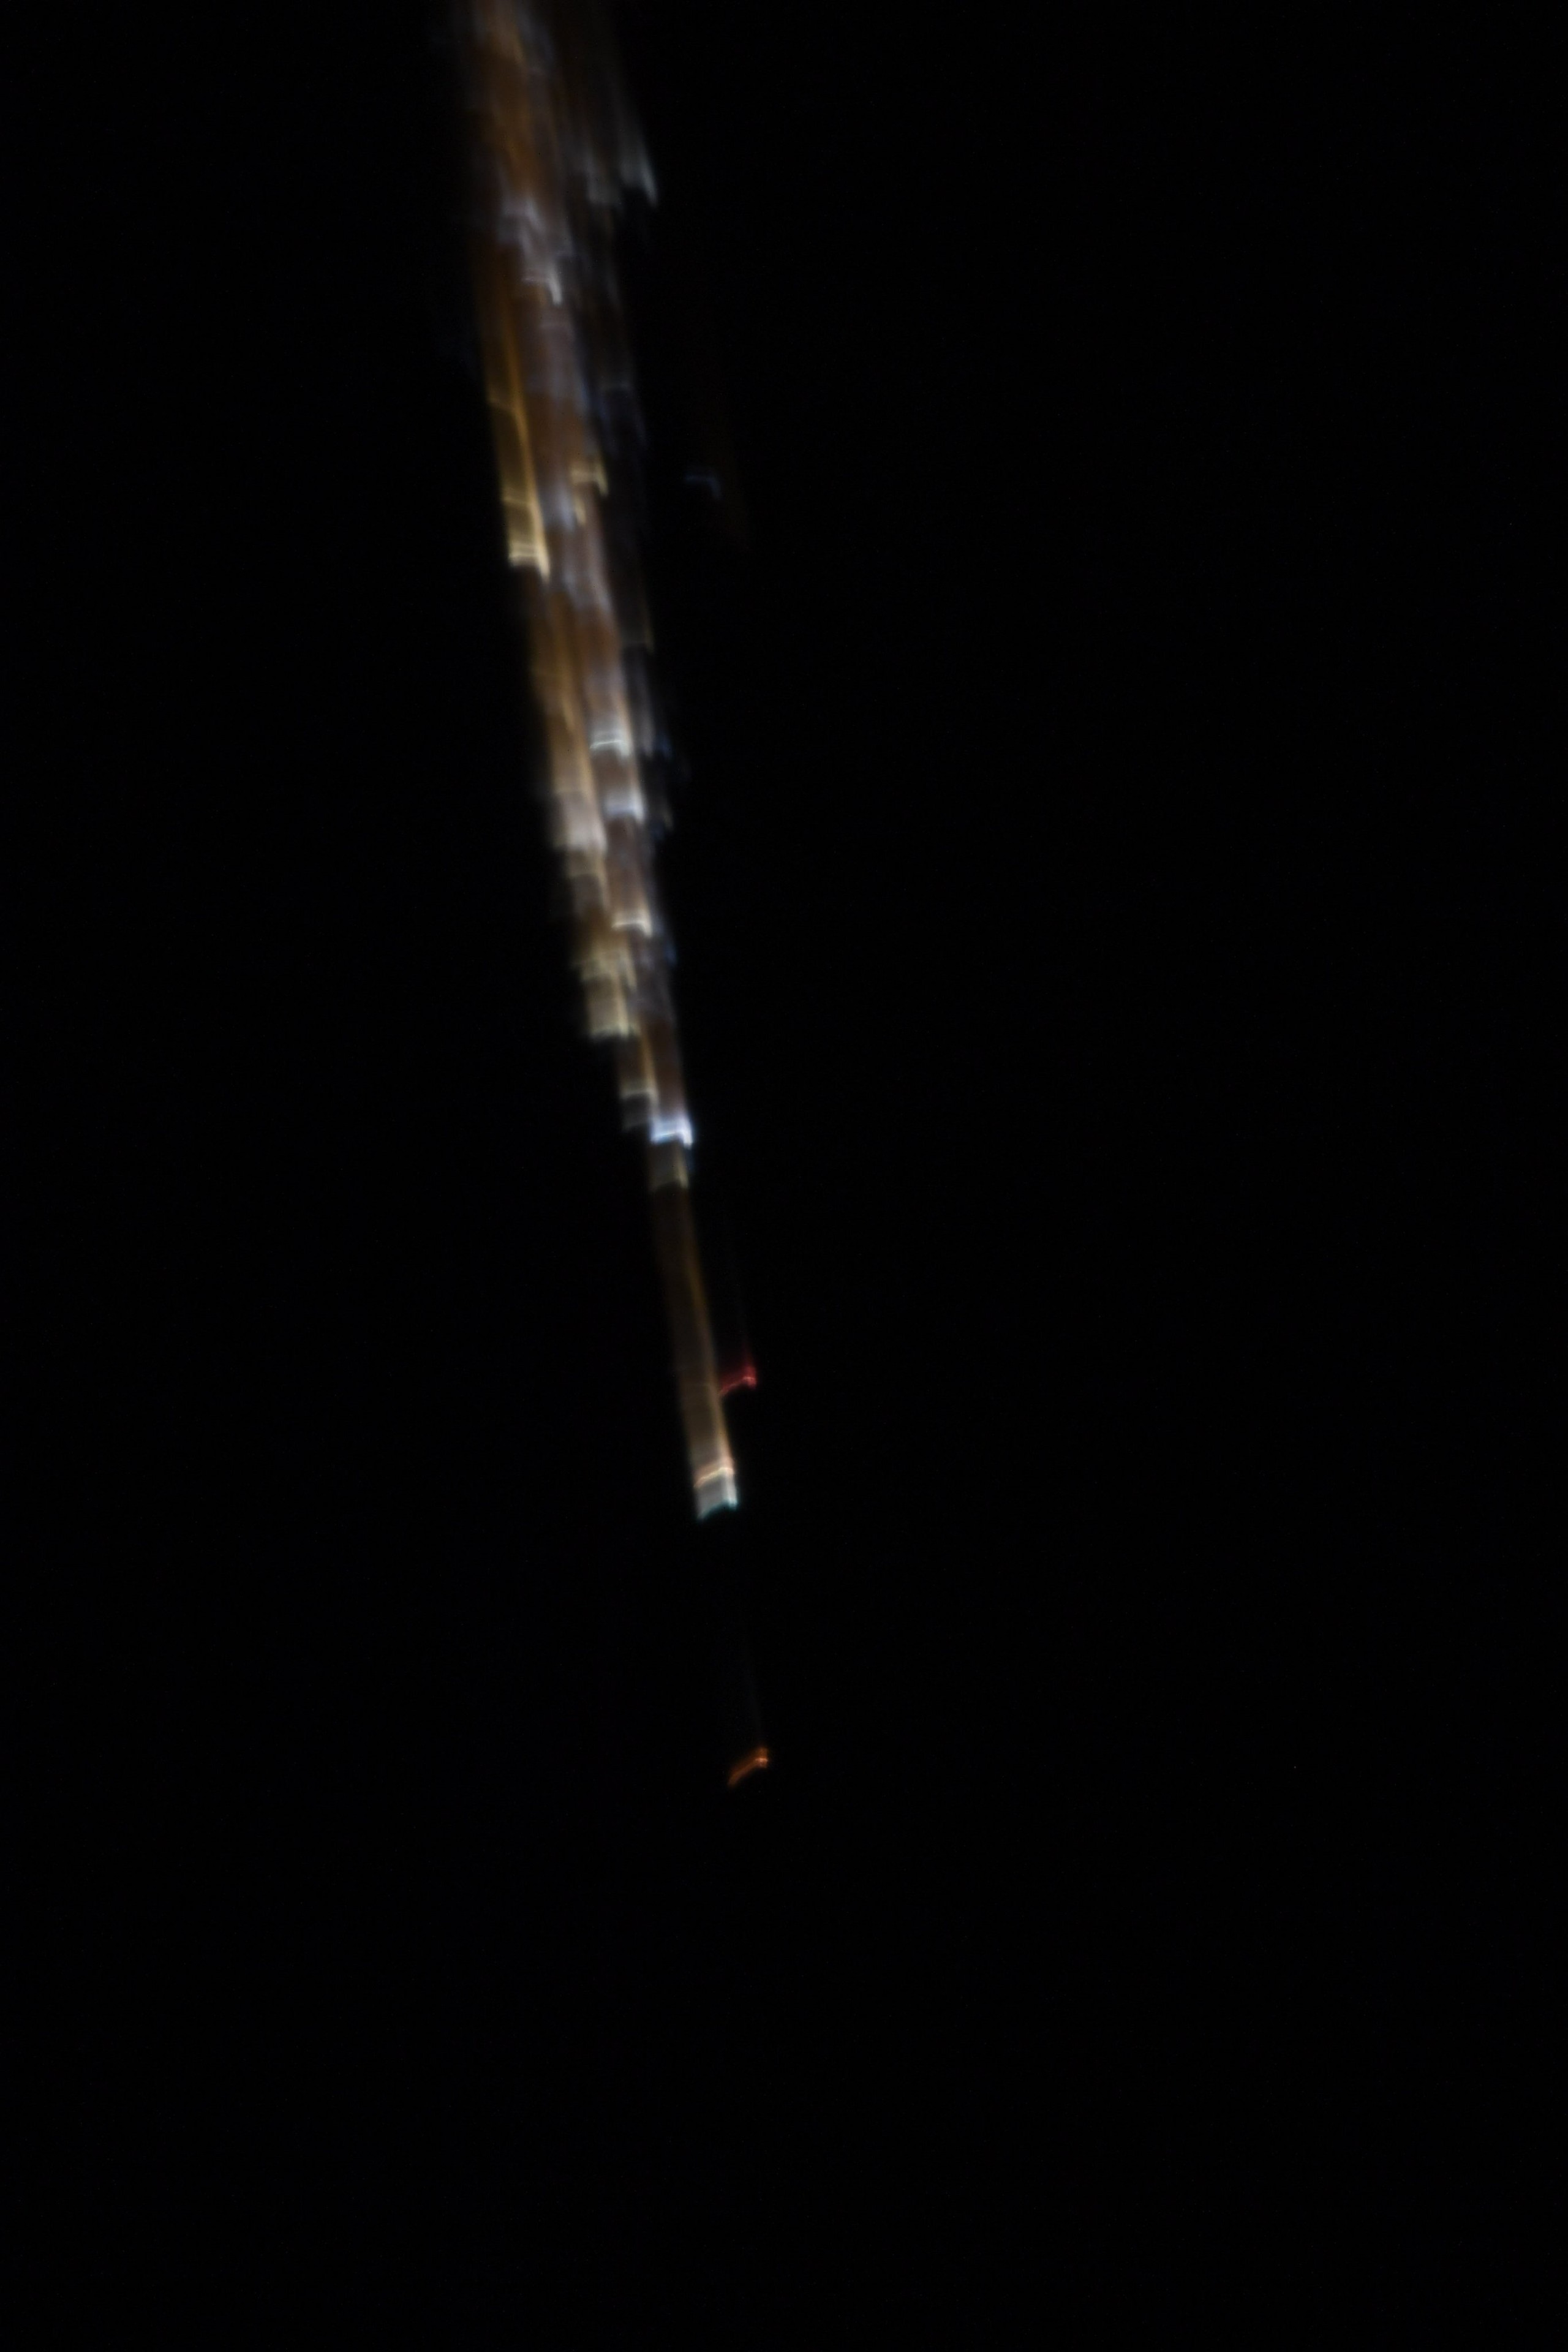 Αστροναύτες στον Διεθνή Διαστημικό Σταθμό παρακολουθούν ένα ρωσικό φορτηγό πλοίο να καίγεται στην ατμόσφαιρα της Γης (φωτογραφίες)